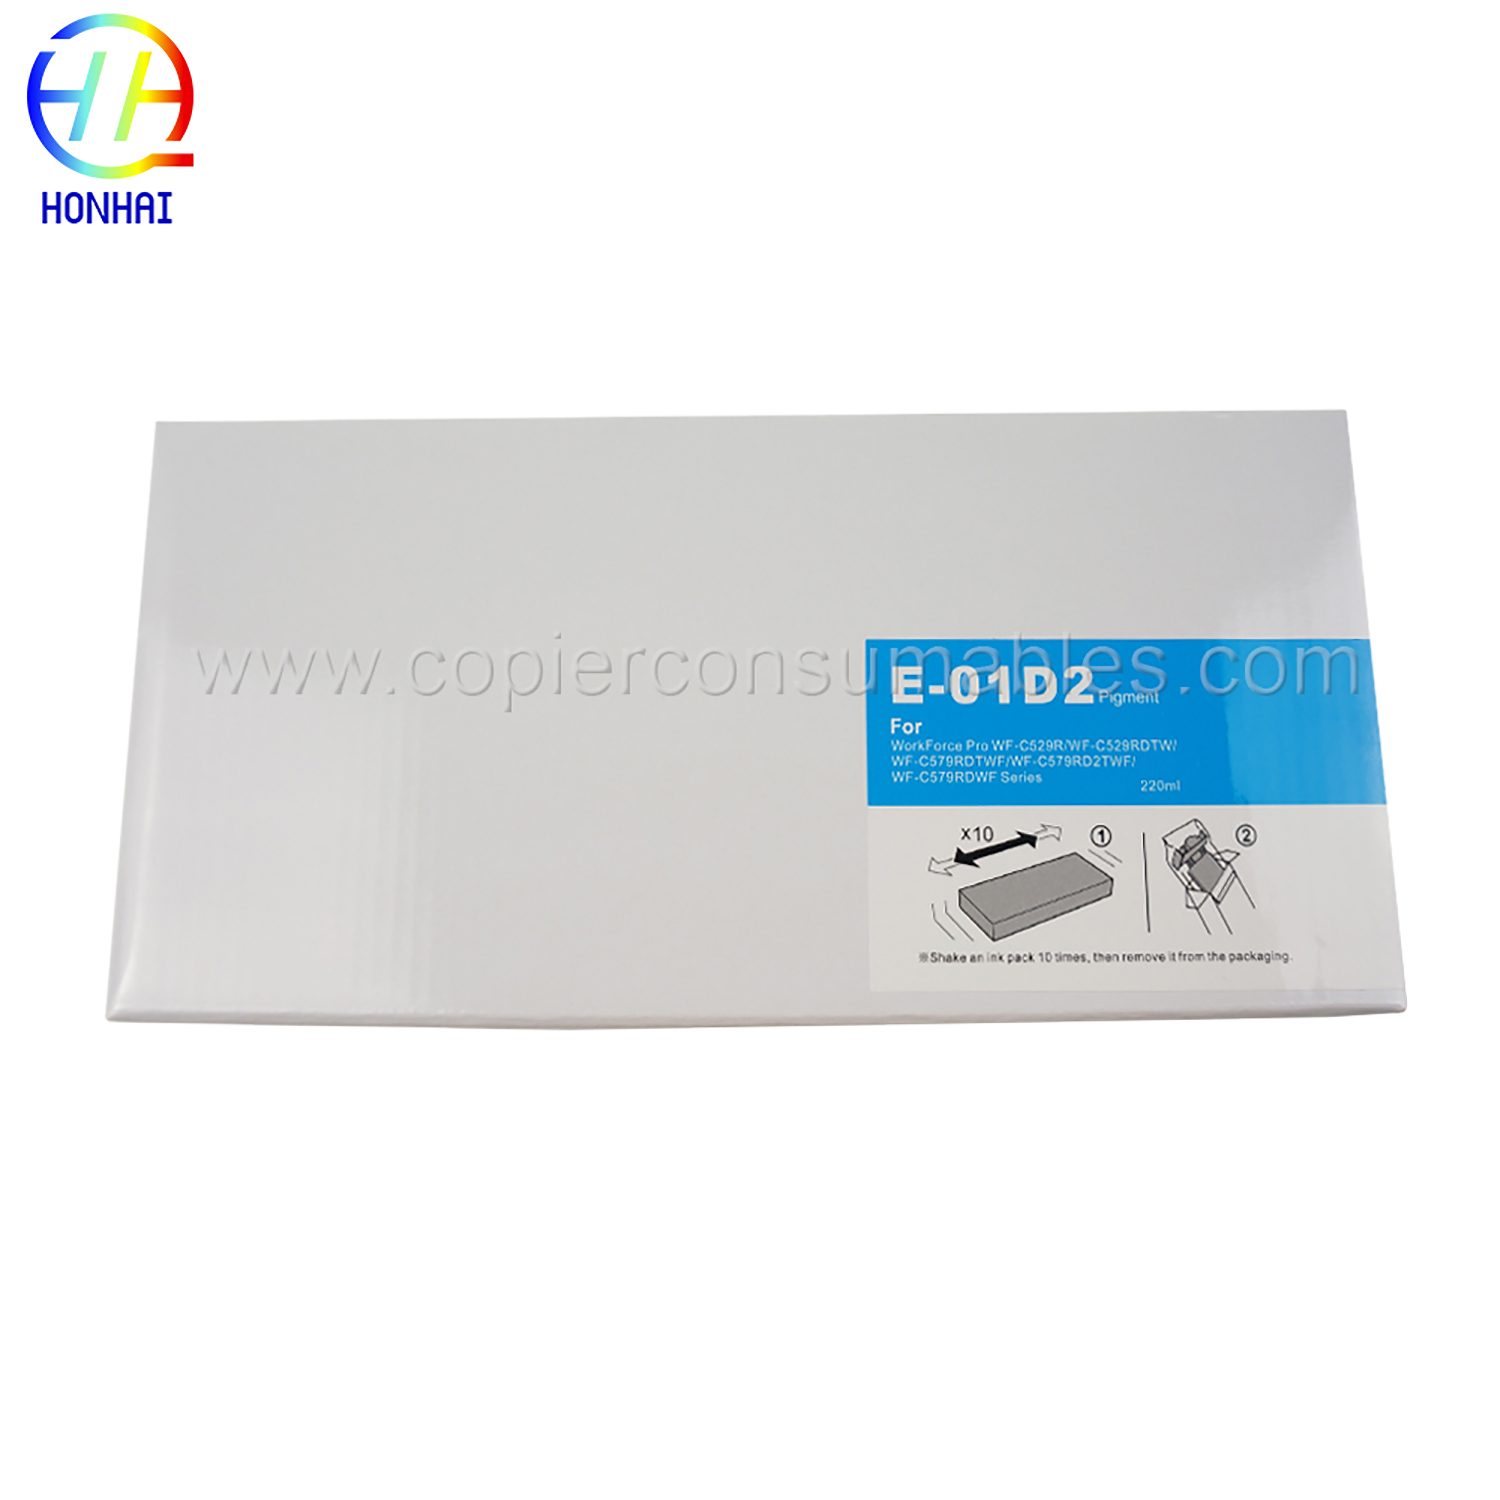 Saco de tinta para Epson WorkForce Pro WF-C529RWF-C529RDTWWF-C579RDTWFWF-C579RD2TWFWF-C579RDWF Series T01D2 (C) 220 ml (1)